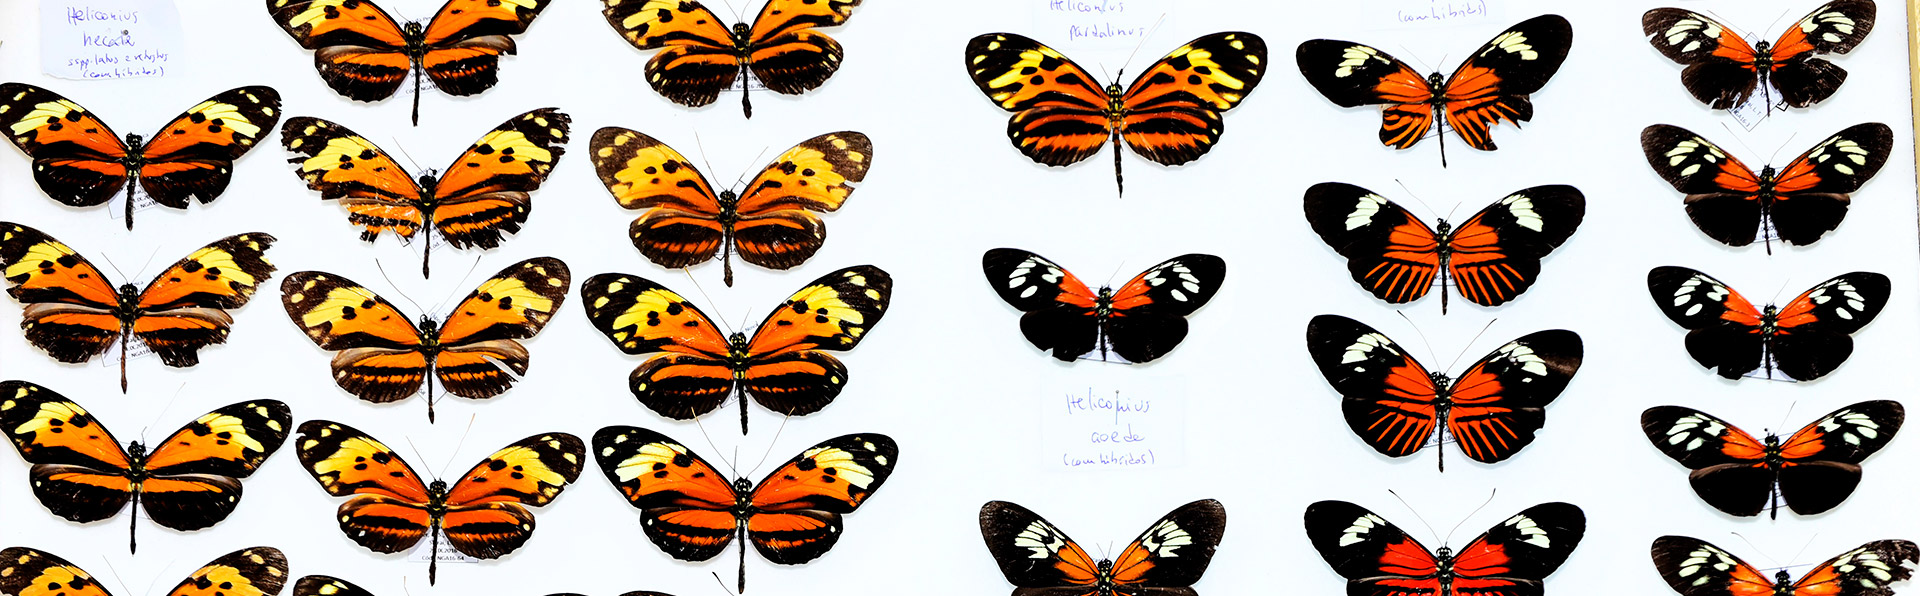 A borboleta da espécie Heliconius elevatus surgiu do cruzamento de ancestrais das atuais Heliconius melpomene e Heliconius pardalinus